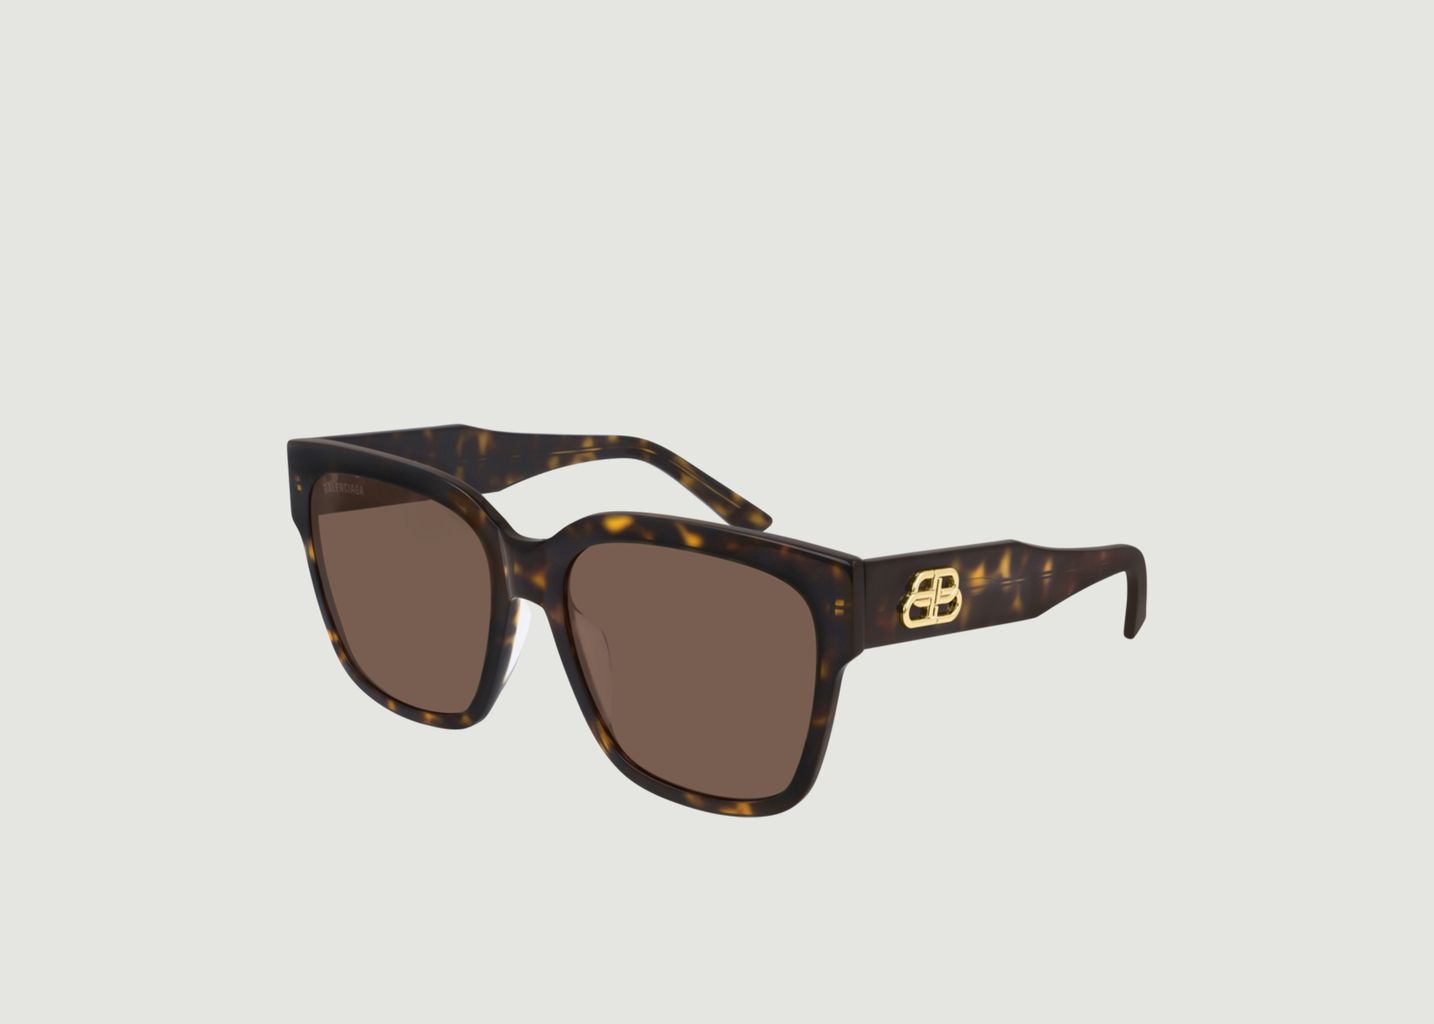 Square sunglasses - Balenciaga